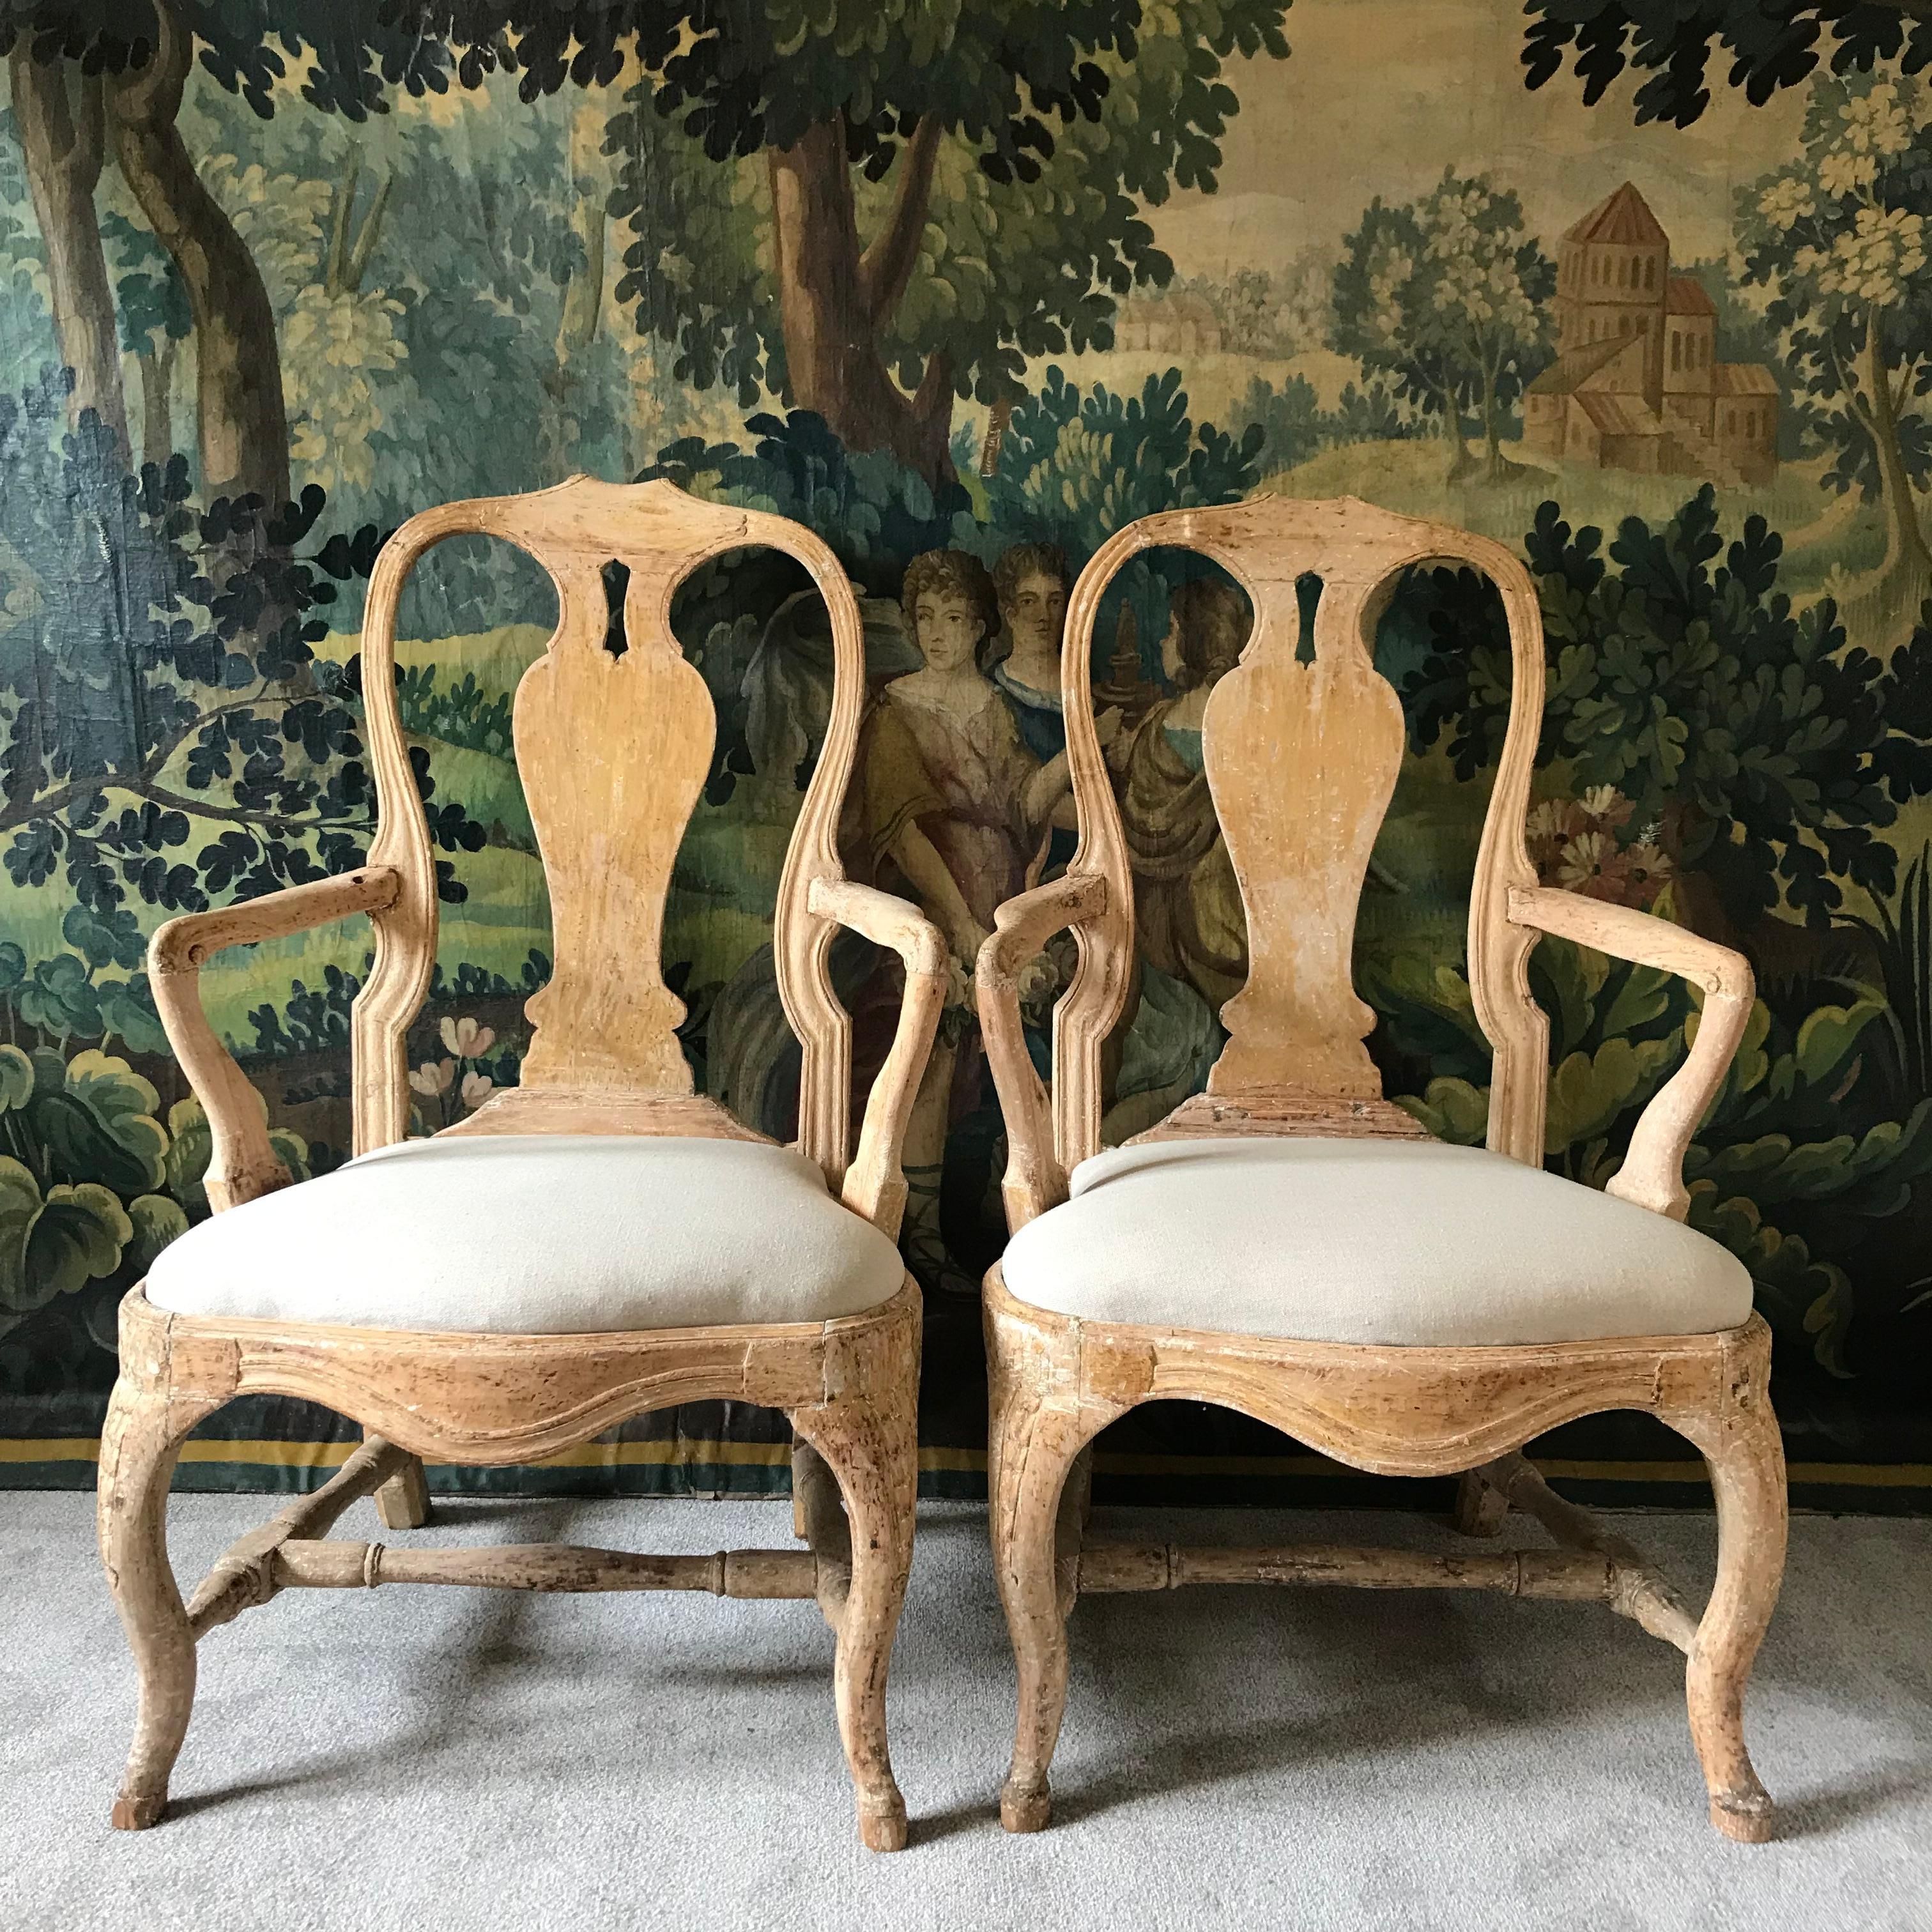 Ein großartiges Paar Rokokosessel aus dem 18. Jahrhundert aus der schwedischen Periode in ihrer ursprünglichen Farbe (nicht retuschiert oder übermalt) mit handgeschnitzten Details, die eine herrliche ockergelbe Farbe haben 
Dieses Paar Stühle ist